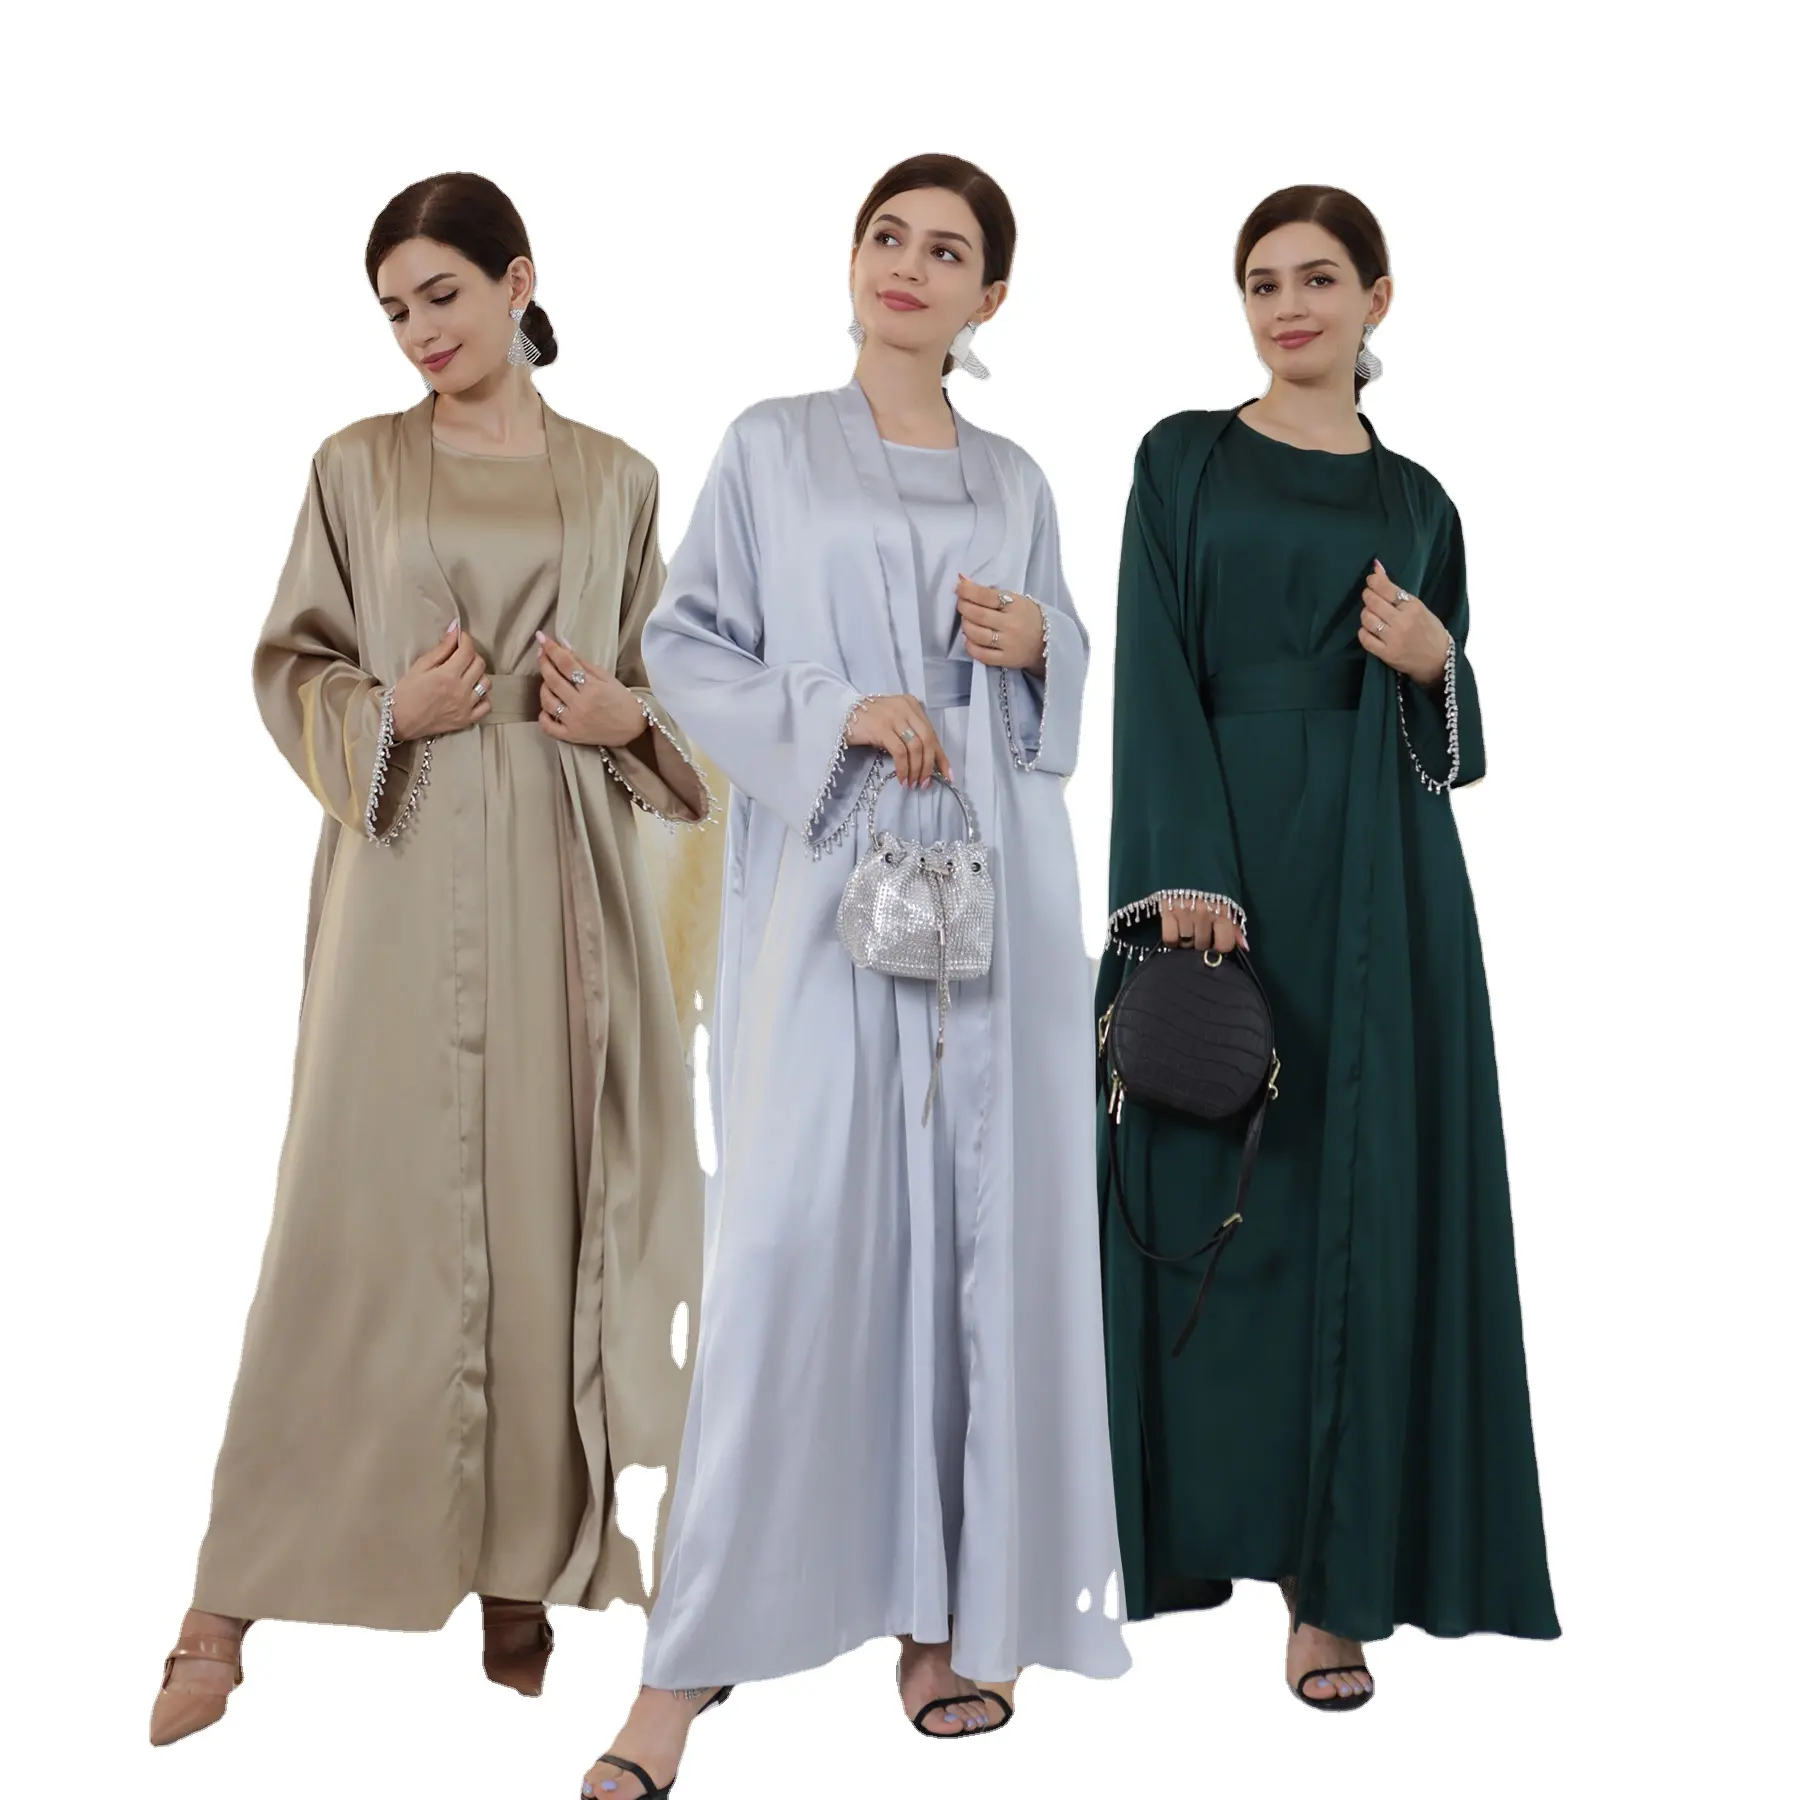 مجموعة عبايات بتصميمات حديثة من دبي عباية للنساء المسلمات عباية مفتوحة أنيقة مع مجموعة فساتين داخلية سهلة الارتداء